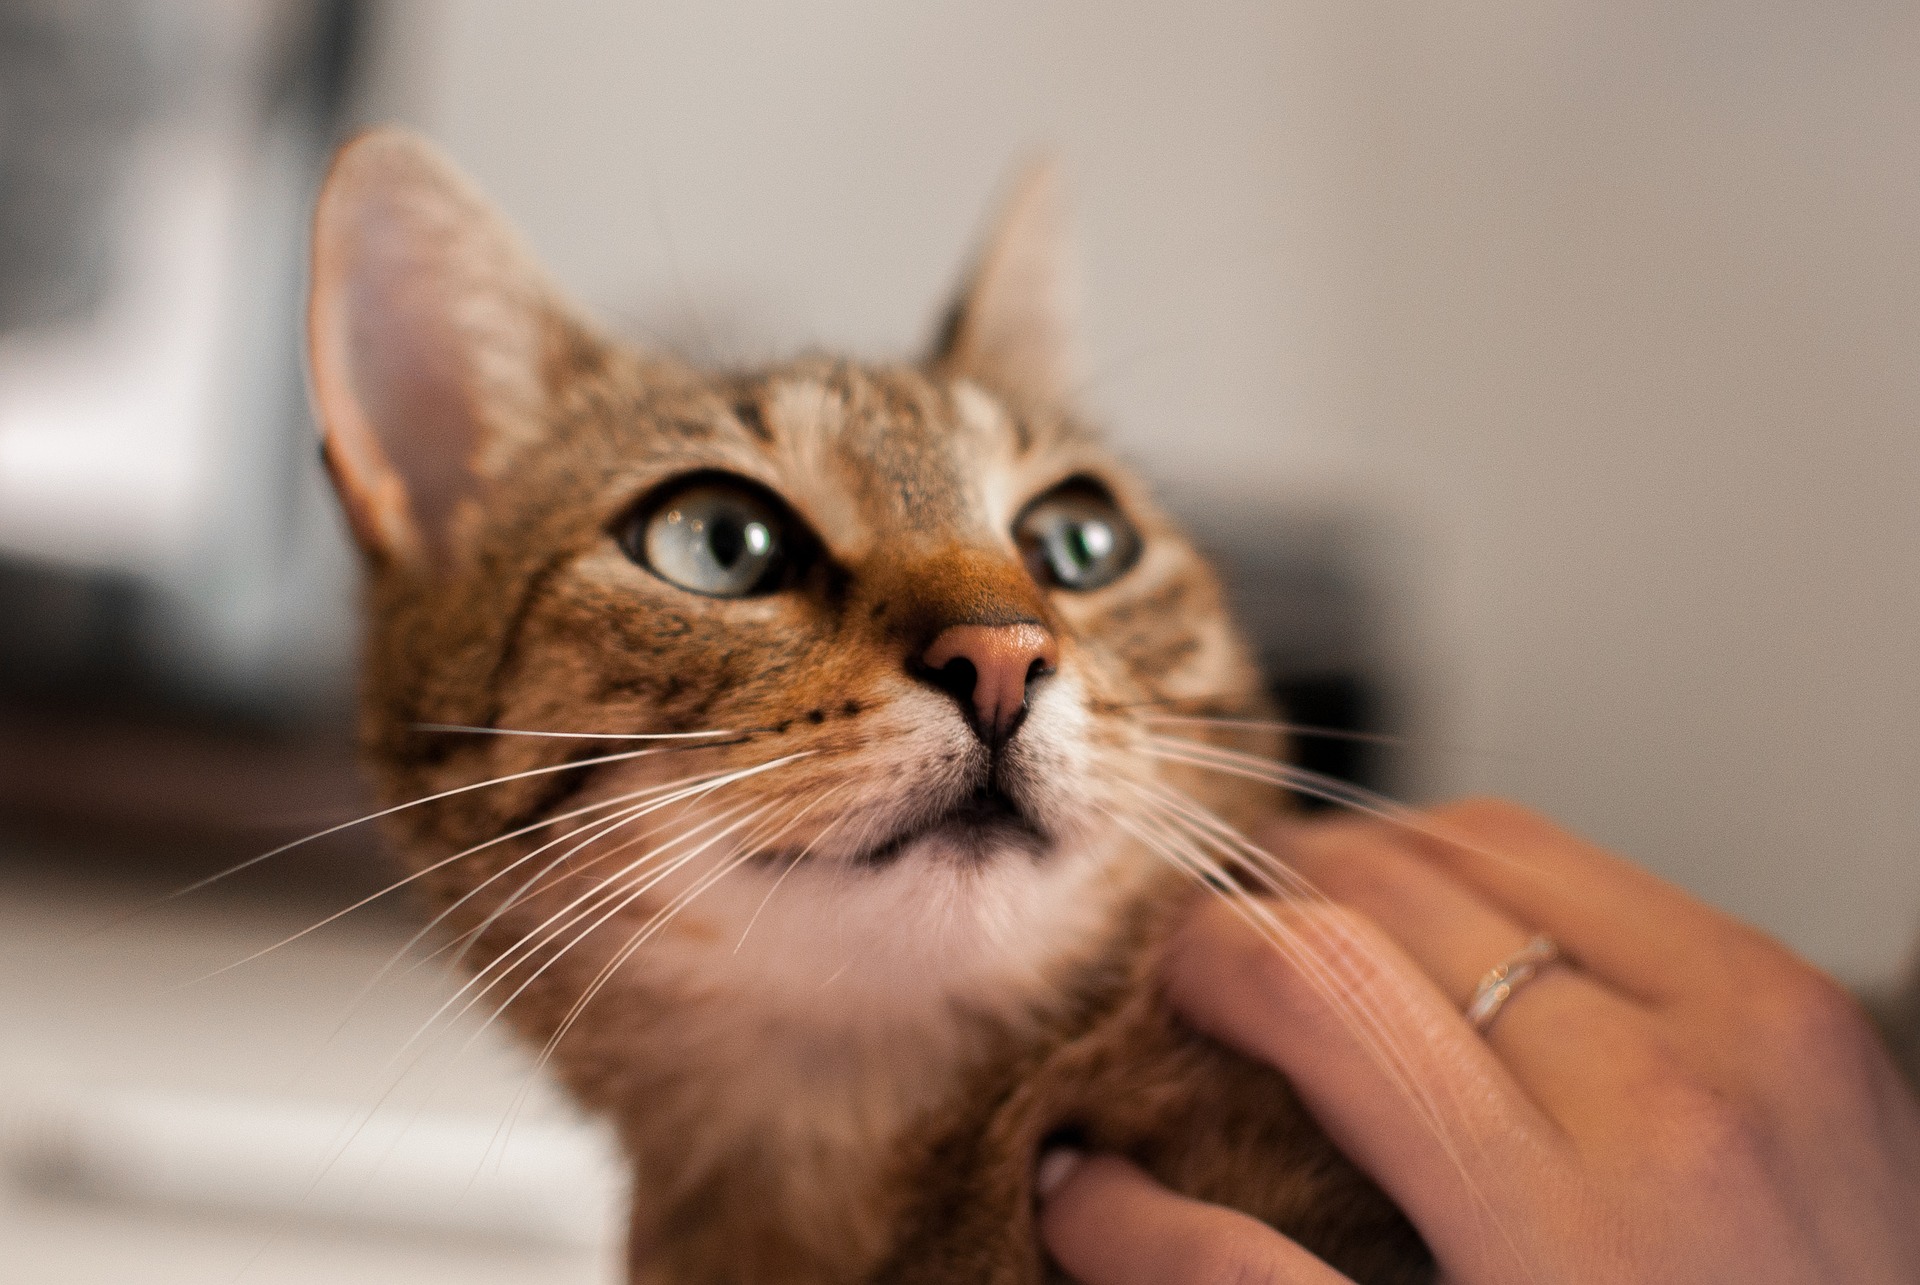 Podávání tablety kočce by mělo být prováděno bez stresu a s pochopením strachu kočky. 